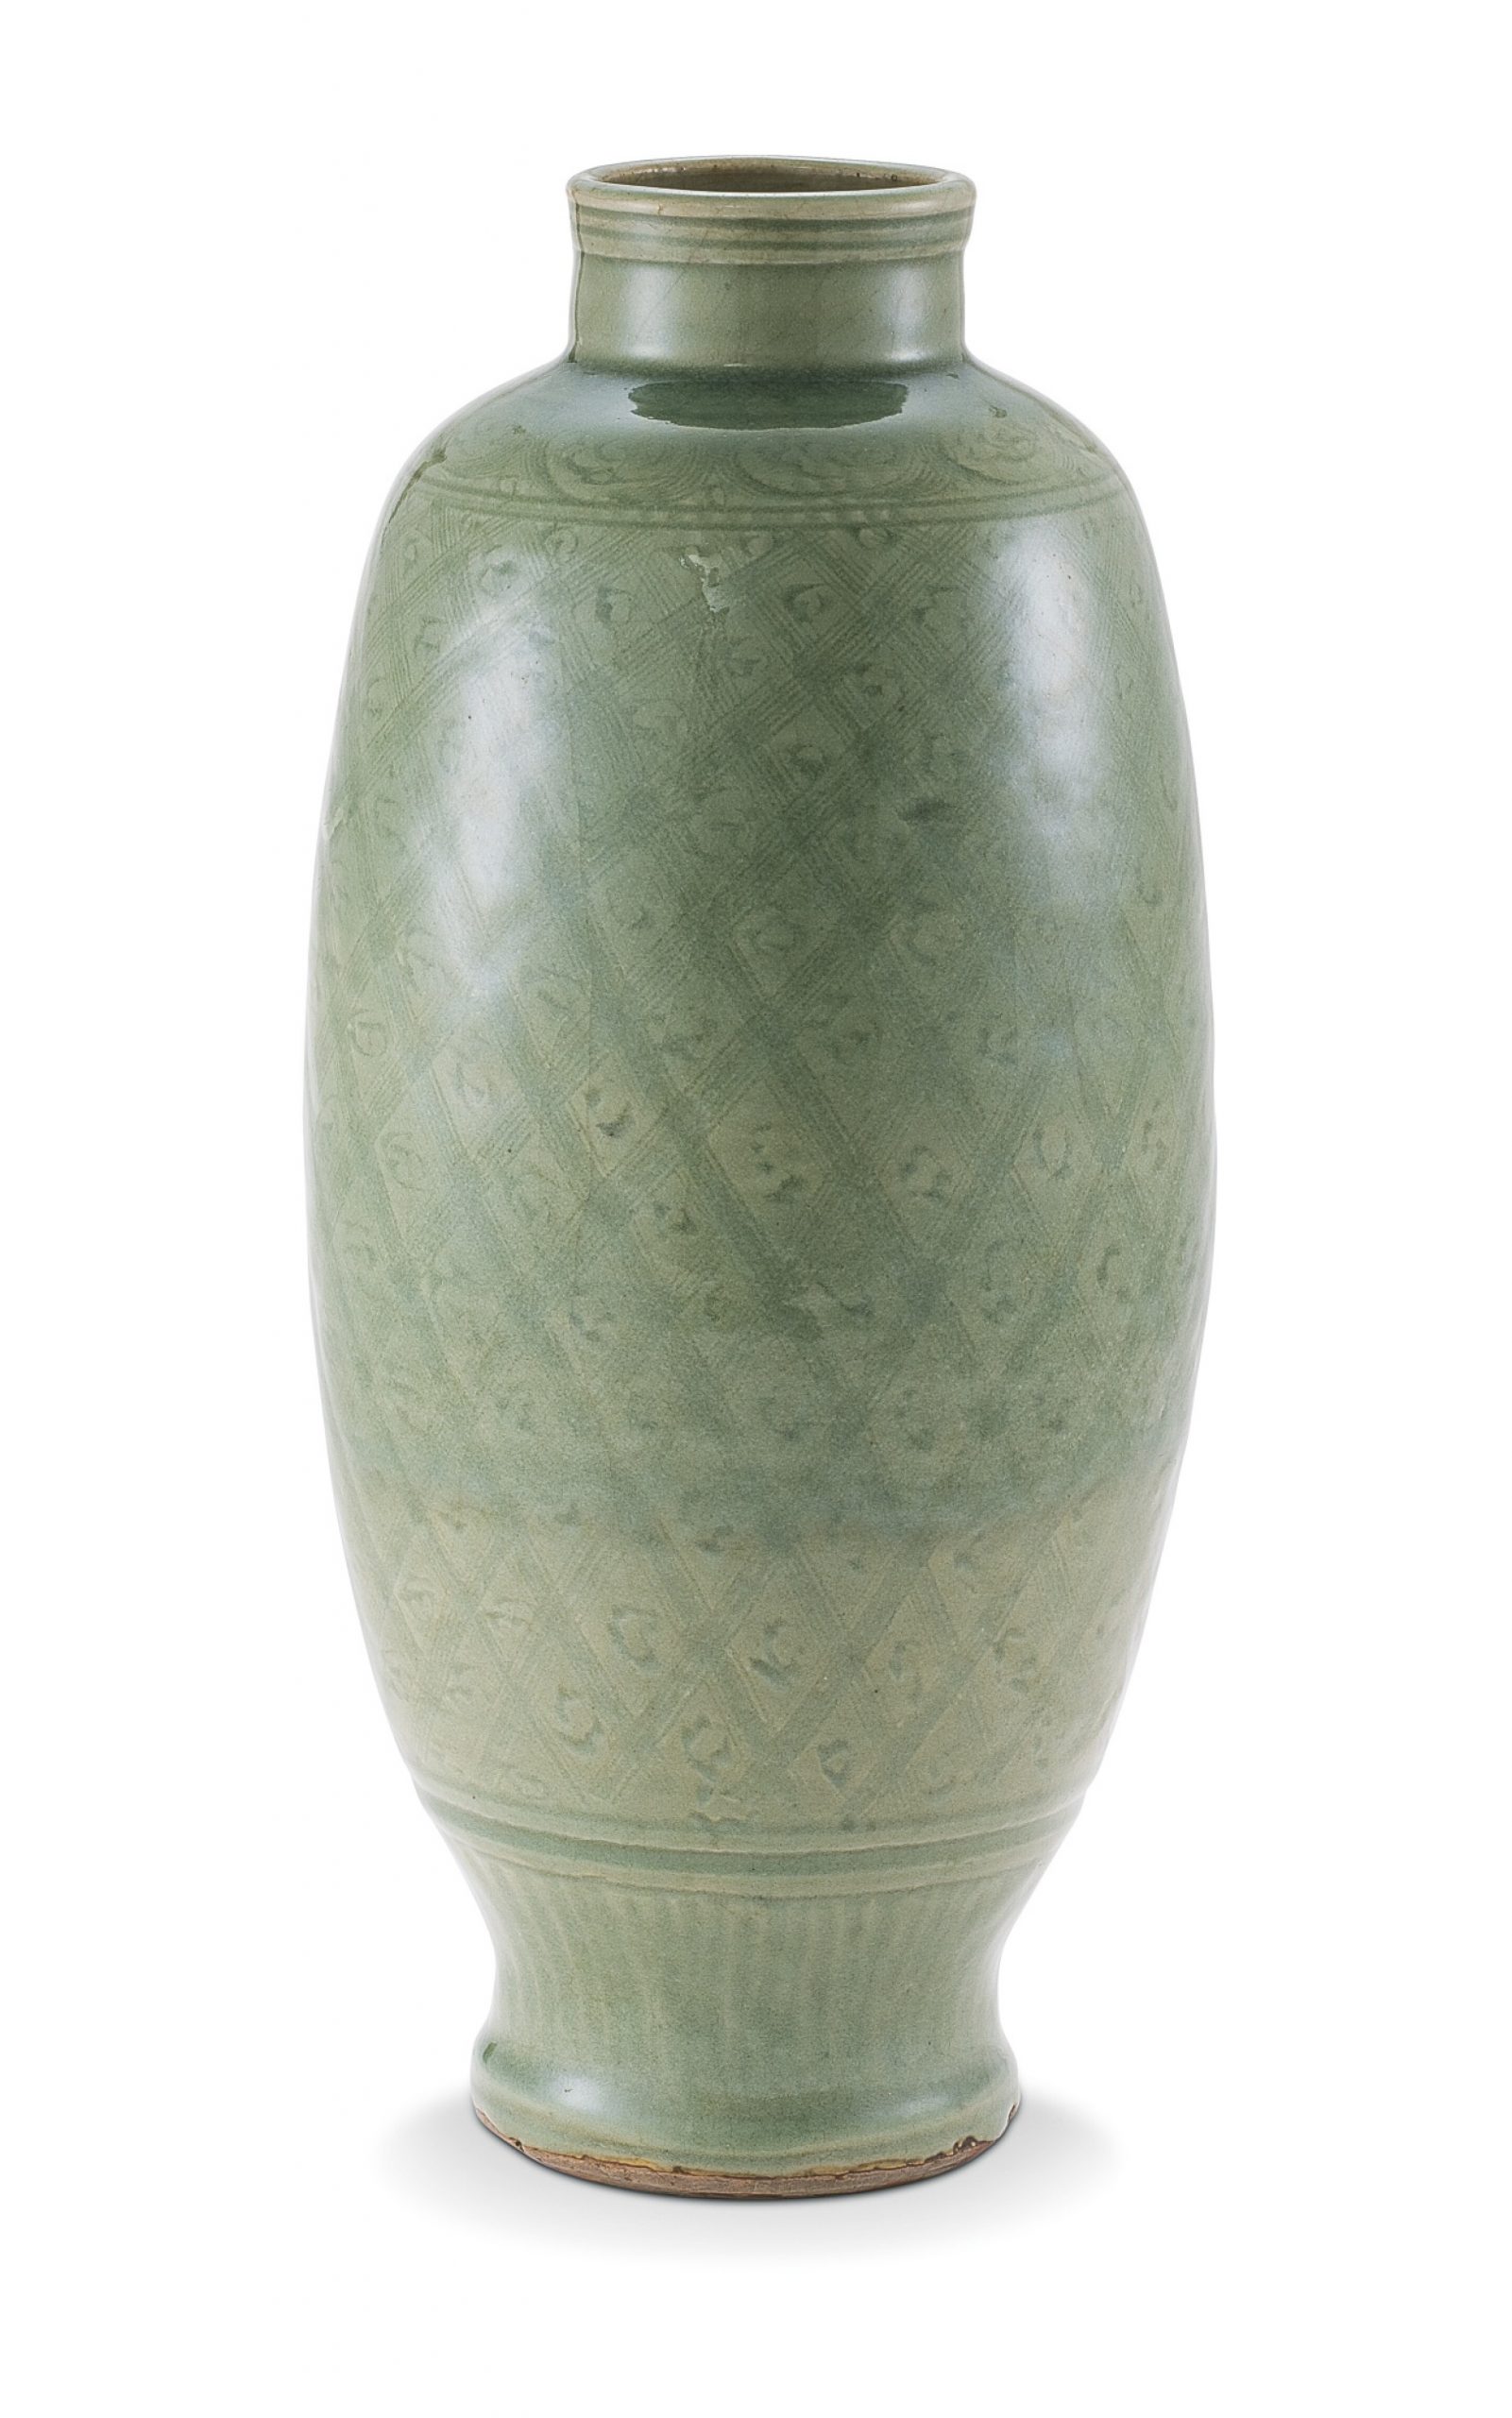 明十七世紀 龍泉窰青釉錦紋燈籠瓶